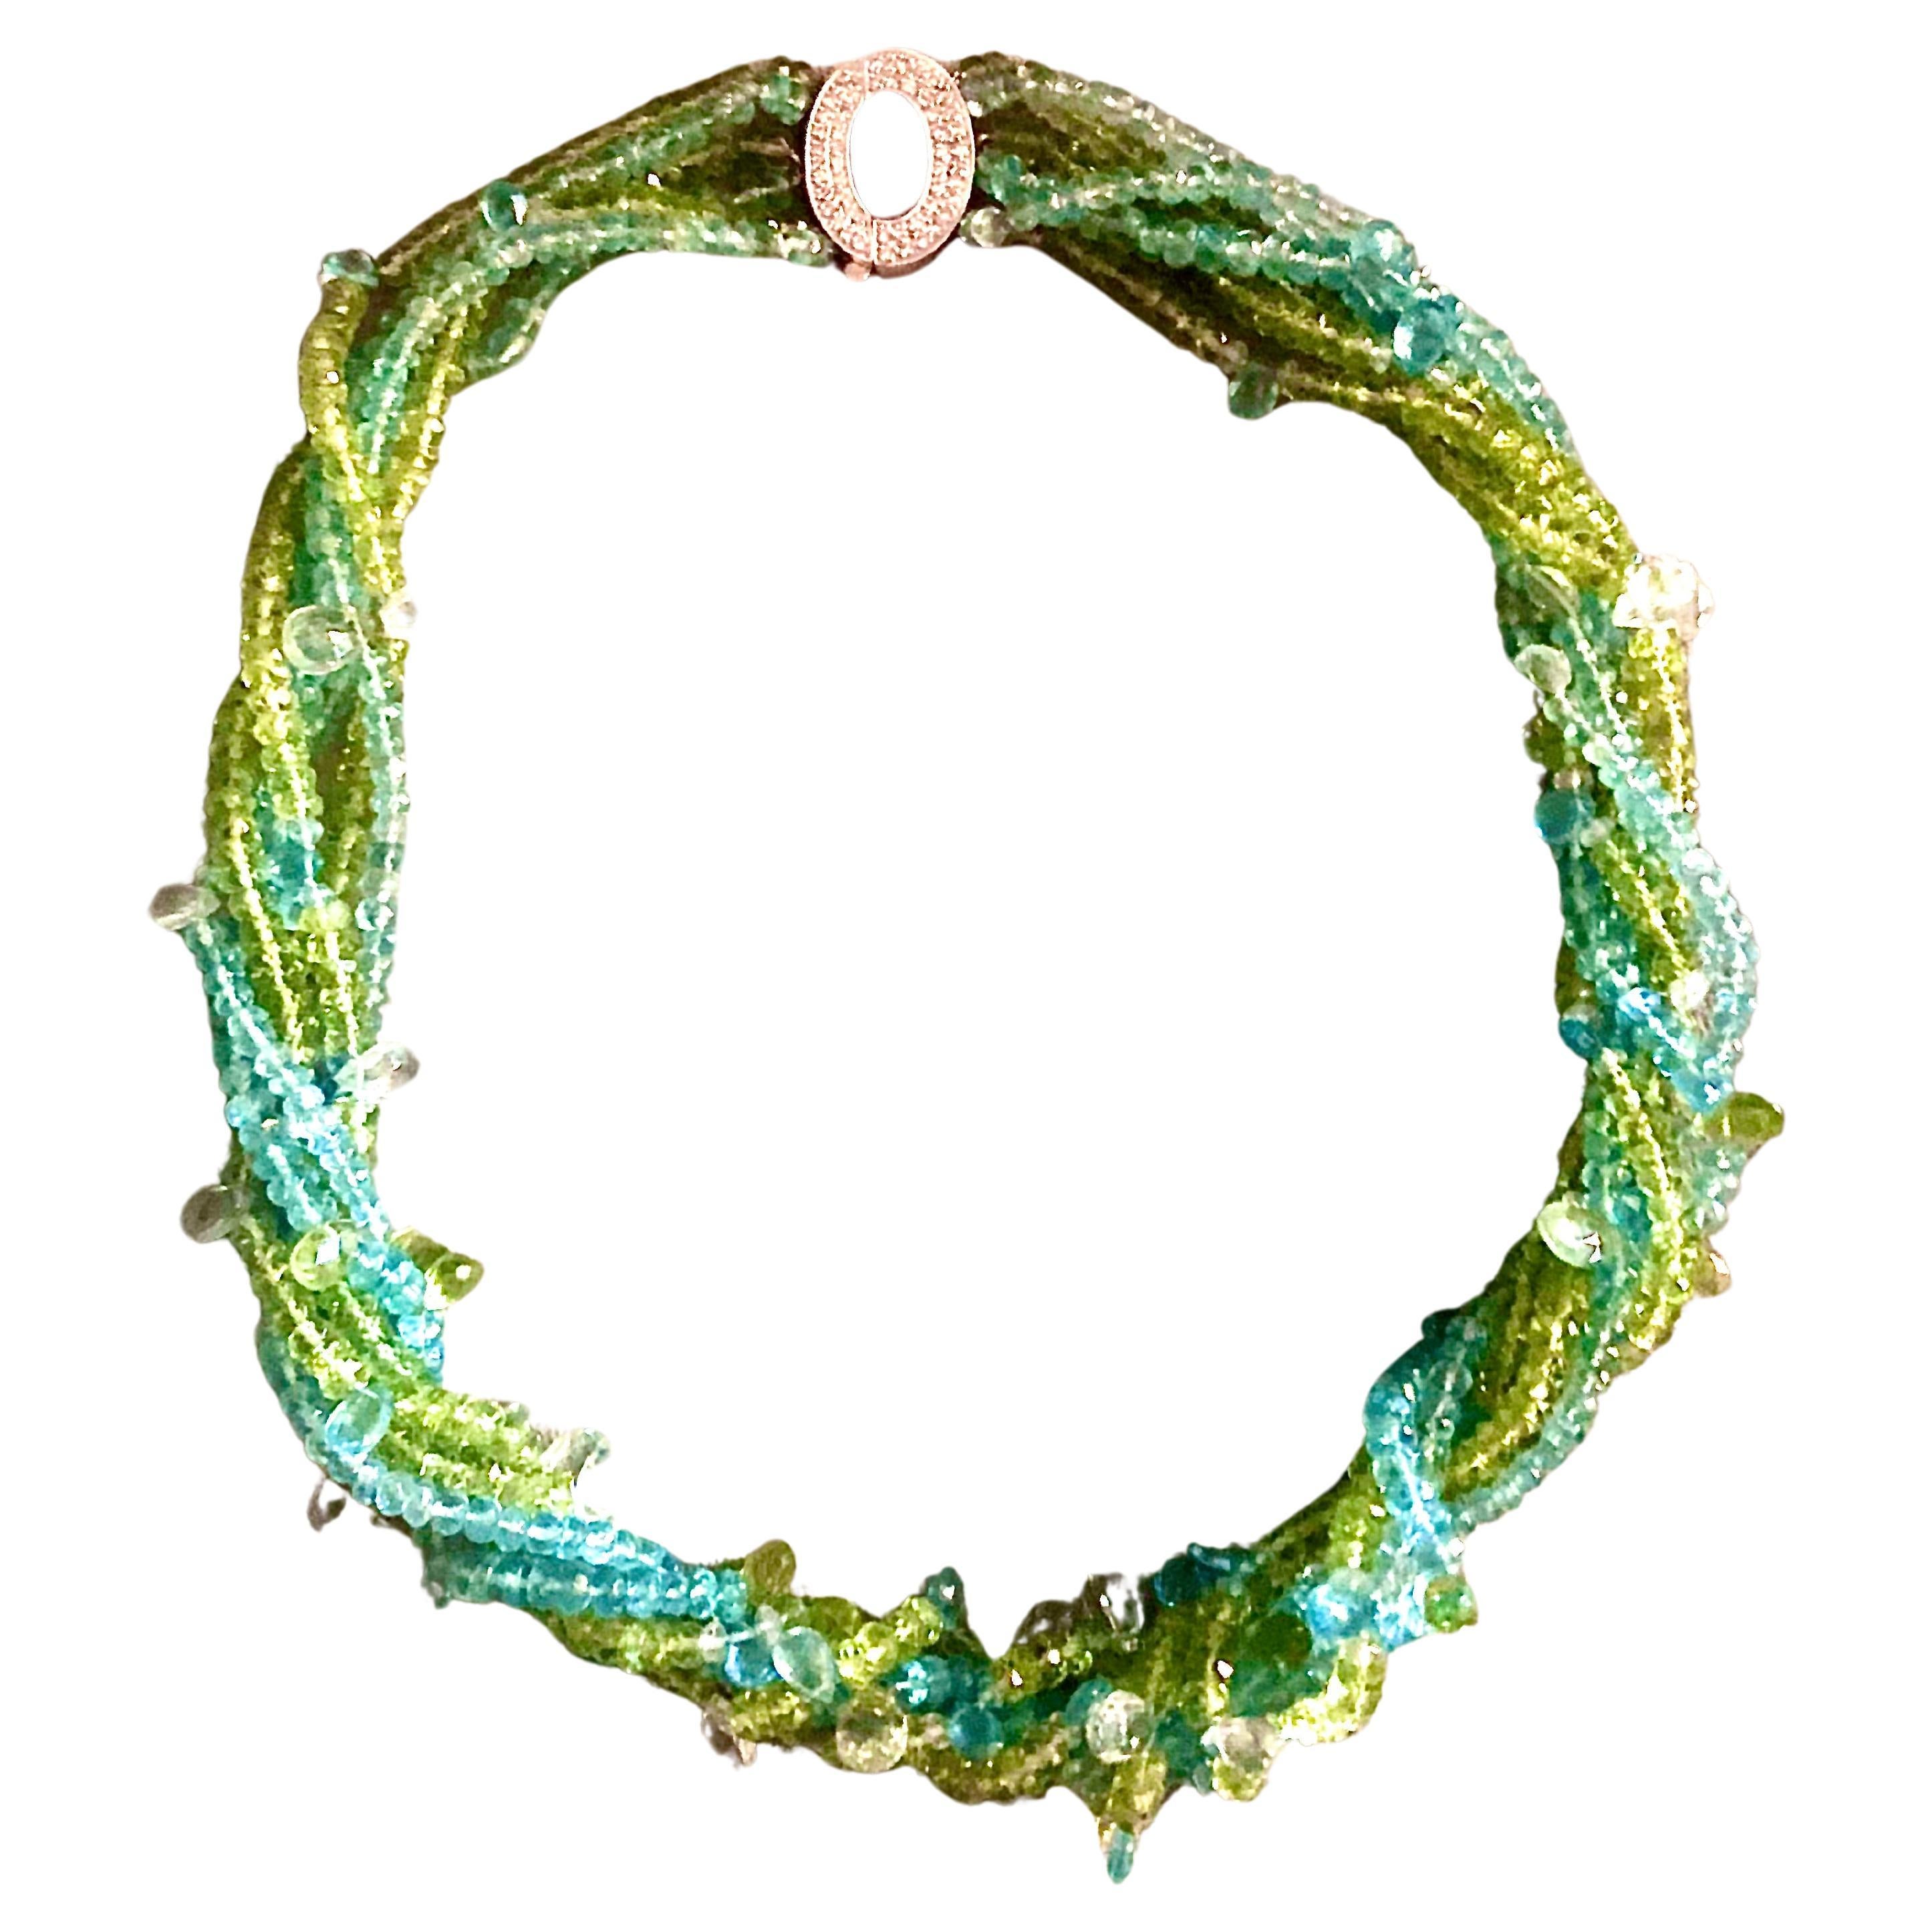 Ce collier a été inspiré par des pierres naturelles provenant de la Terre. Les fils de péridot vert et d'aigue-marine bleue reflètent la terre et le ciel. Des briolettes d'aigue-marine pâle en forme de poire et à facettes de plusieurs tailles,